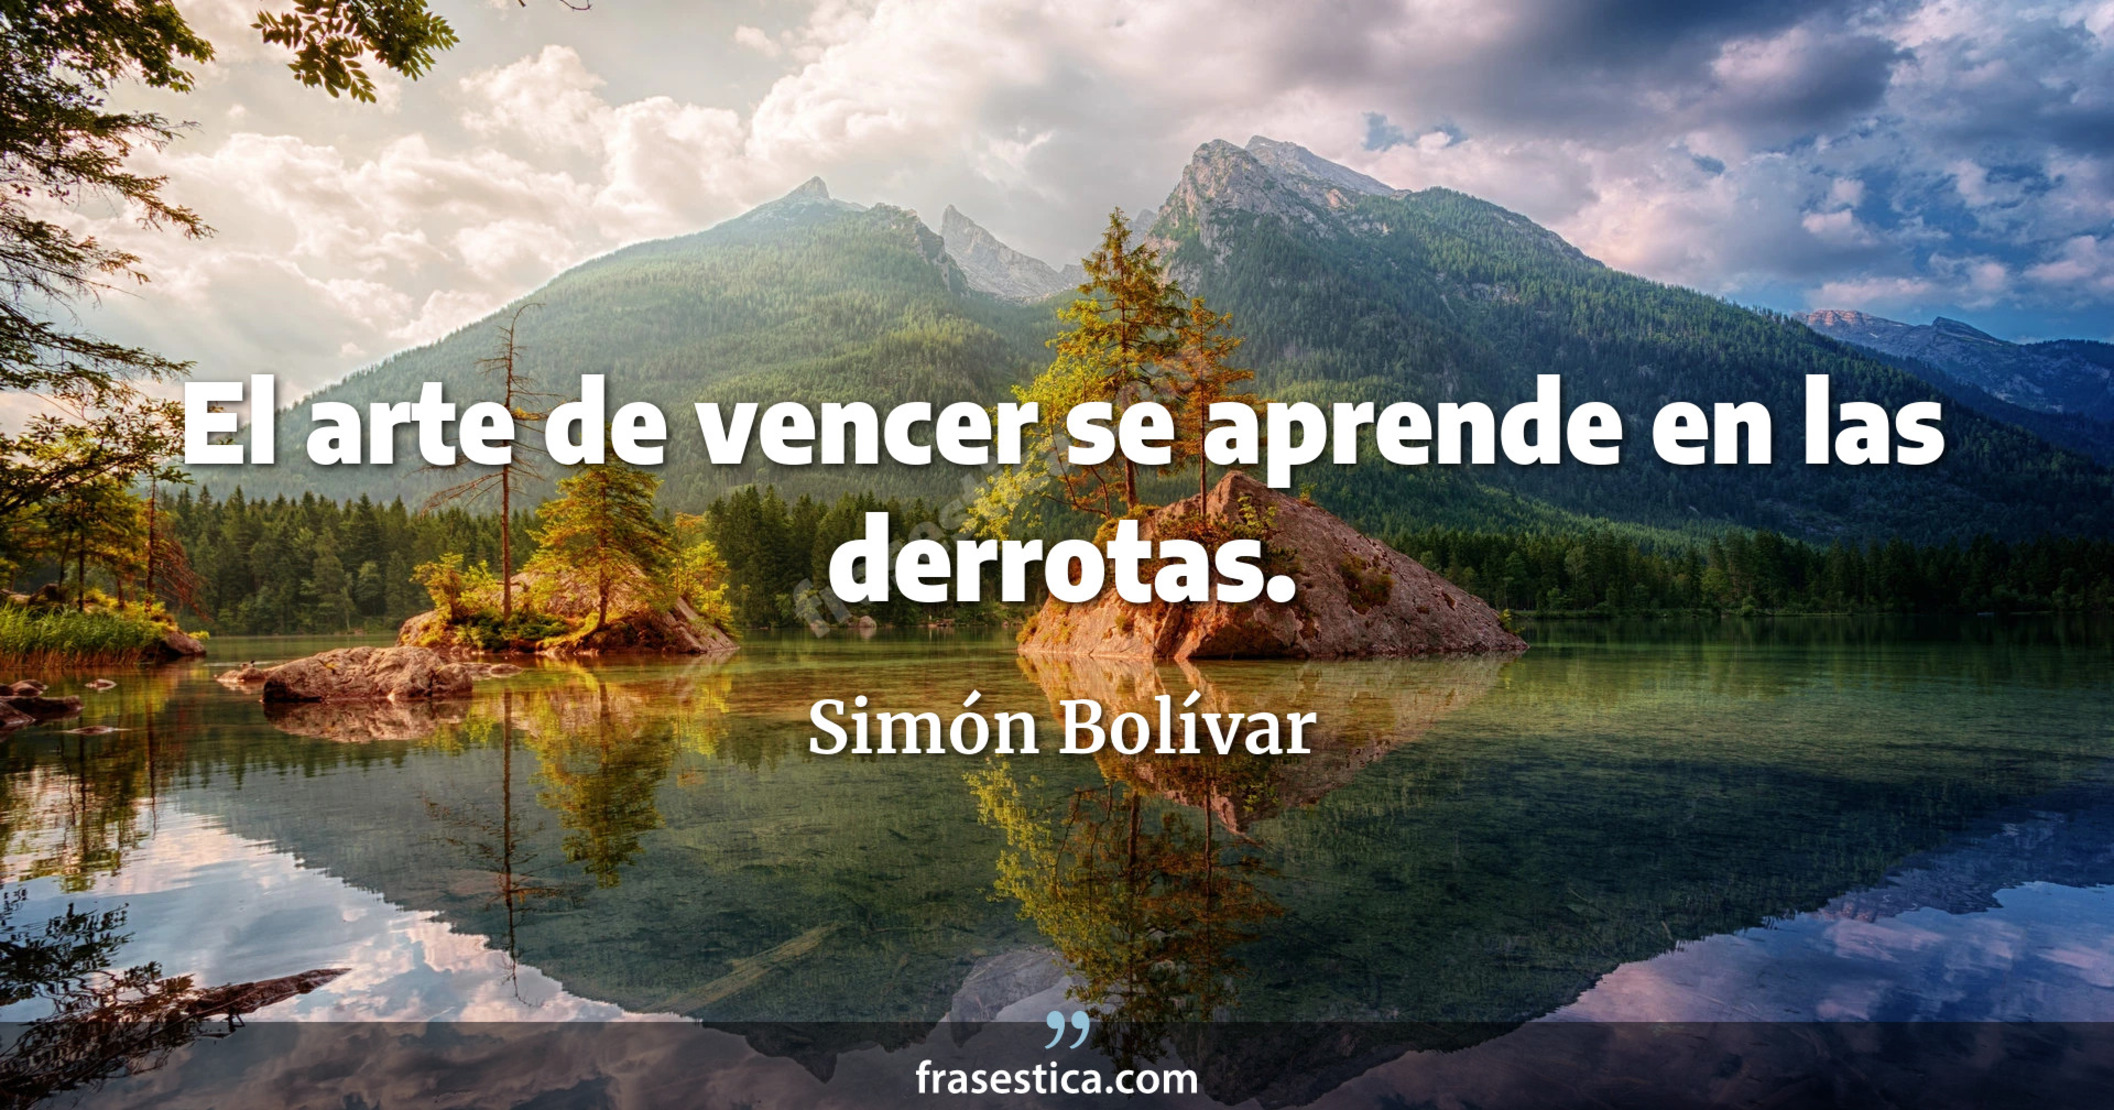 El arte de vencer se aprende en las derrotas. - Simón Bolívar